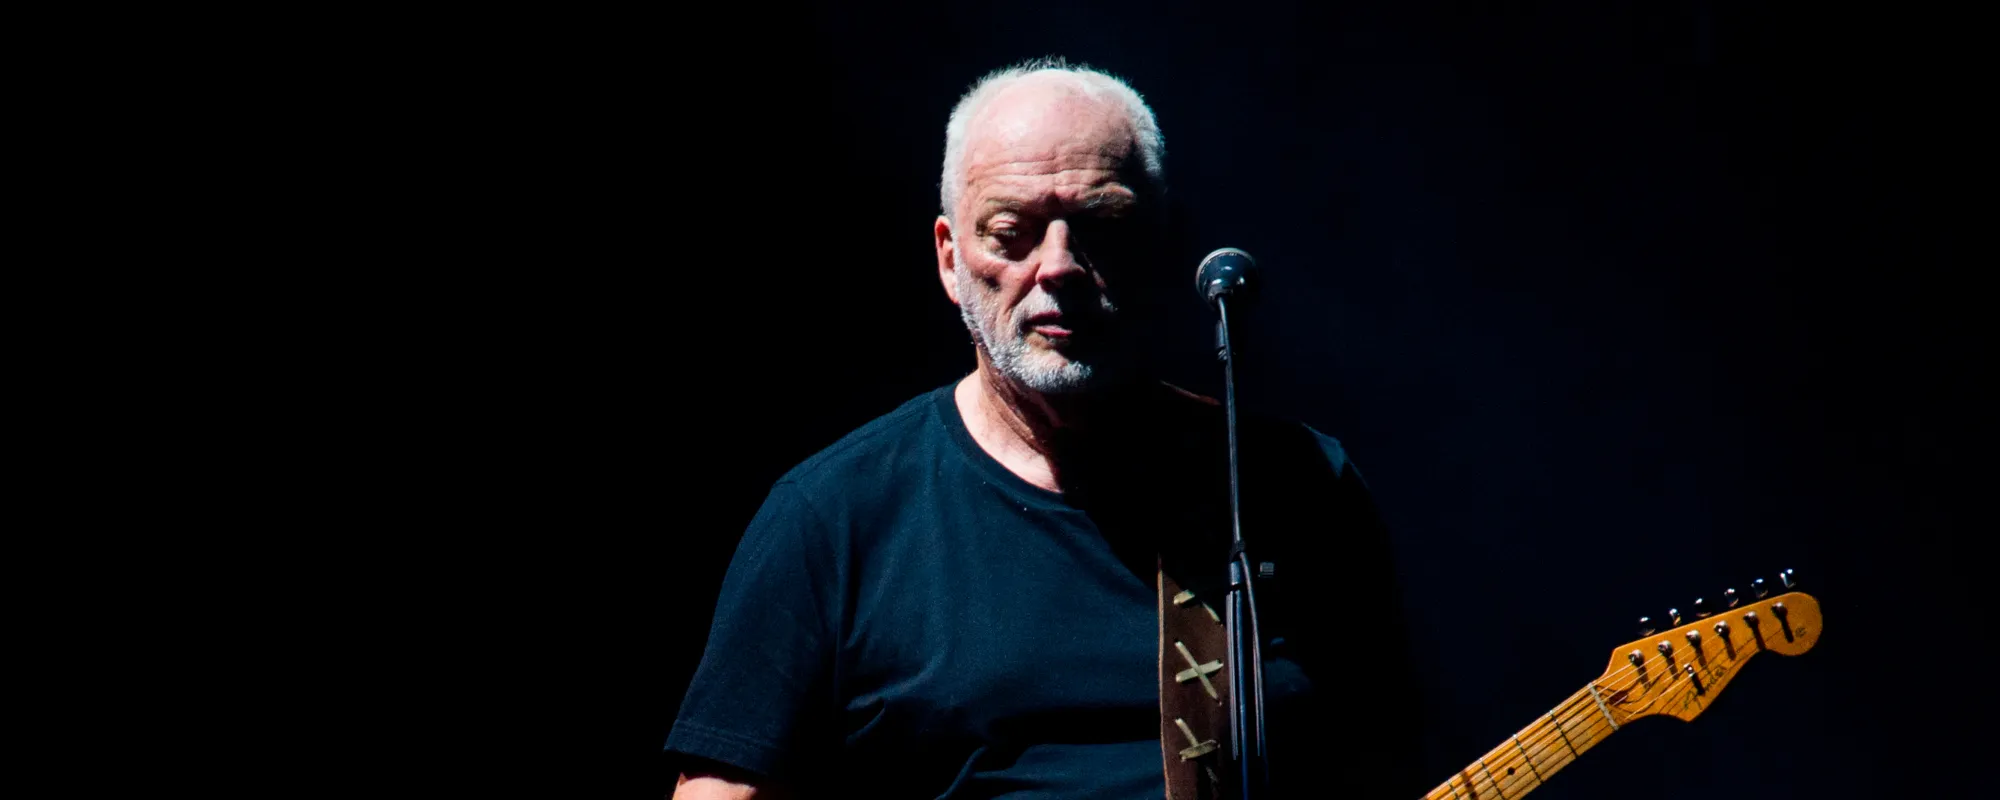 6 of David Gilmour’s Favorite Pink Floyd Songs